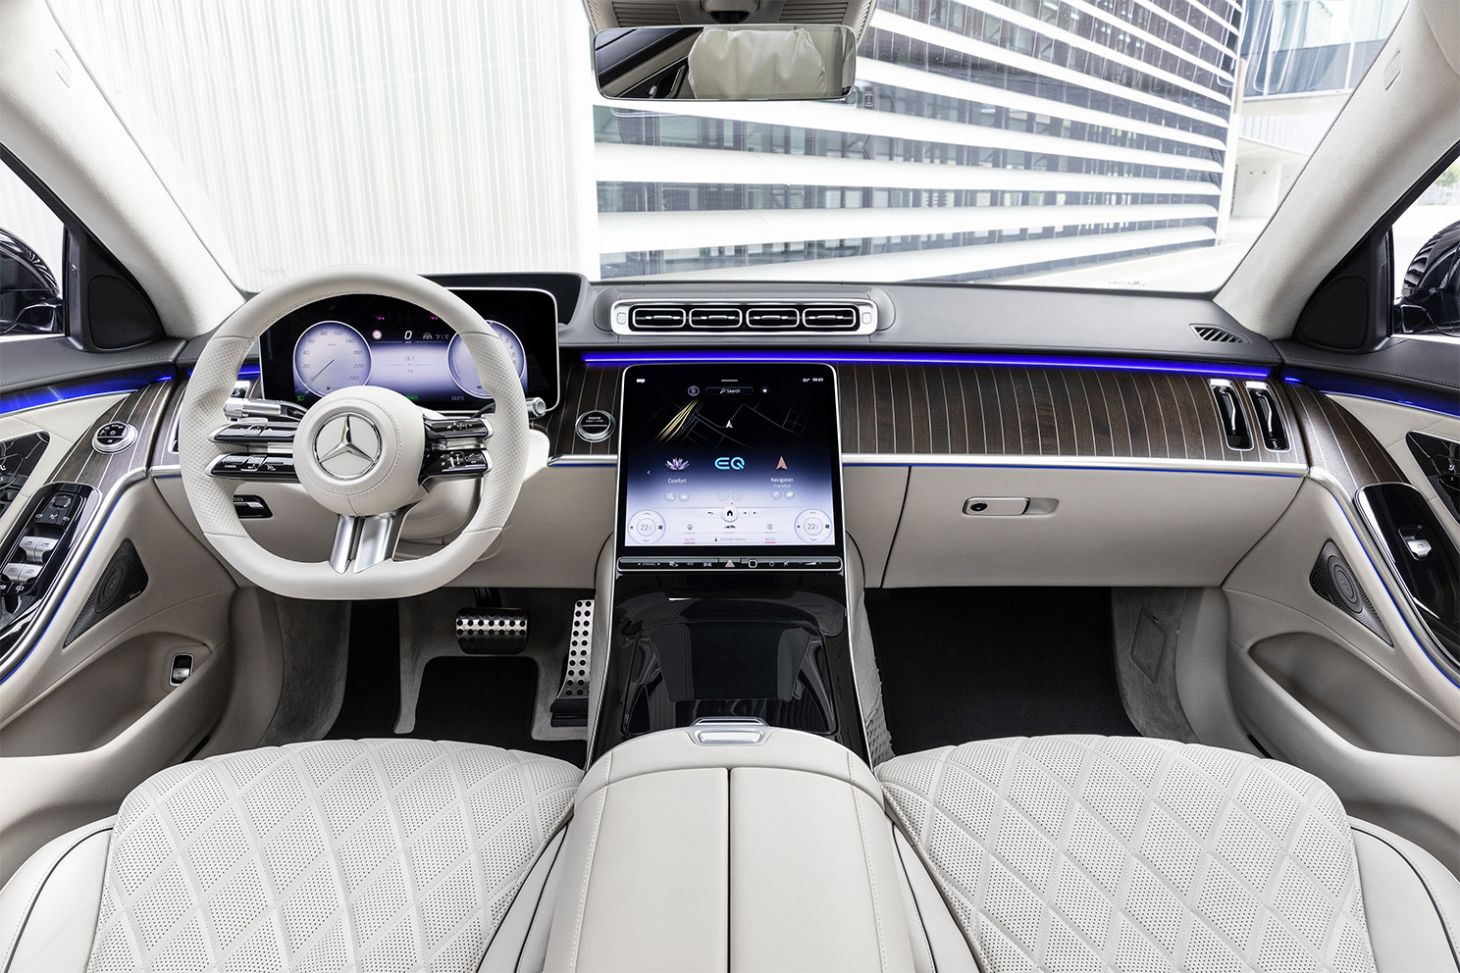 Novo Mercedes Benz Classe S é repleto de tecnologias conheça 5 delas